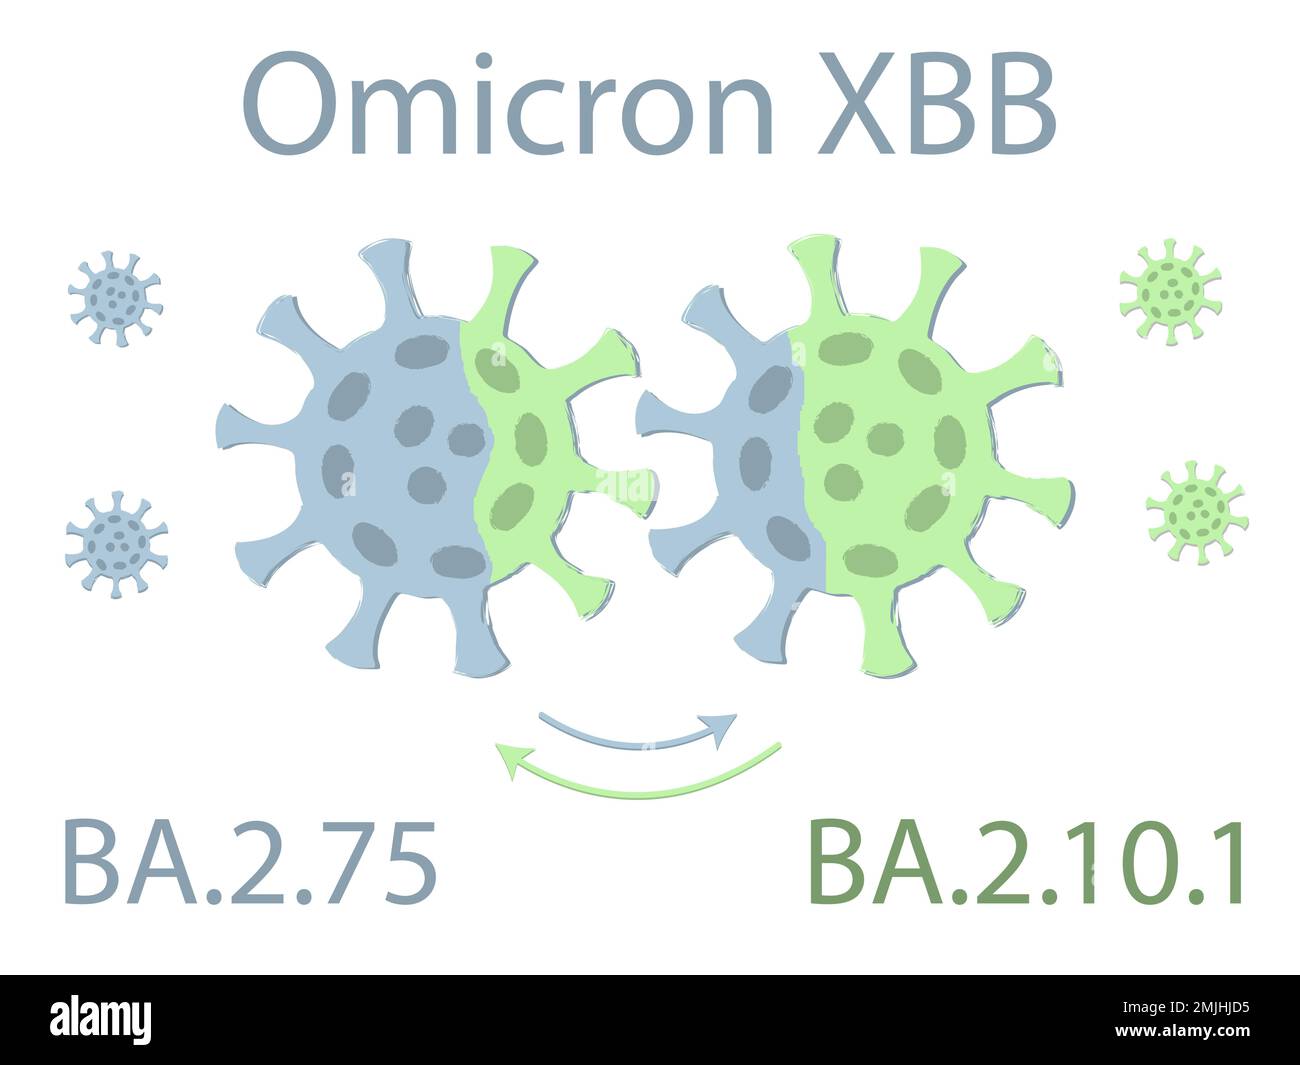 Die Variante Omicron XBB ist eine Mischung der beiden Untervarianten von Omicron: BA.2,75 und BA.2.10.1. Schematische Zeichnung. Zwei Viren tauschen ihre DNA aus. Die Excha Stock Vektor